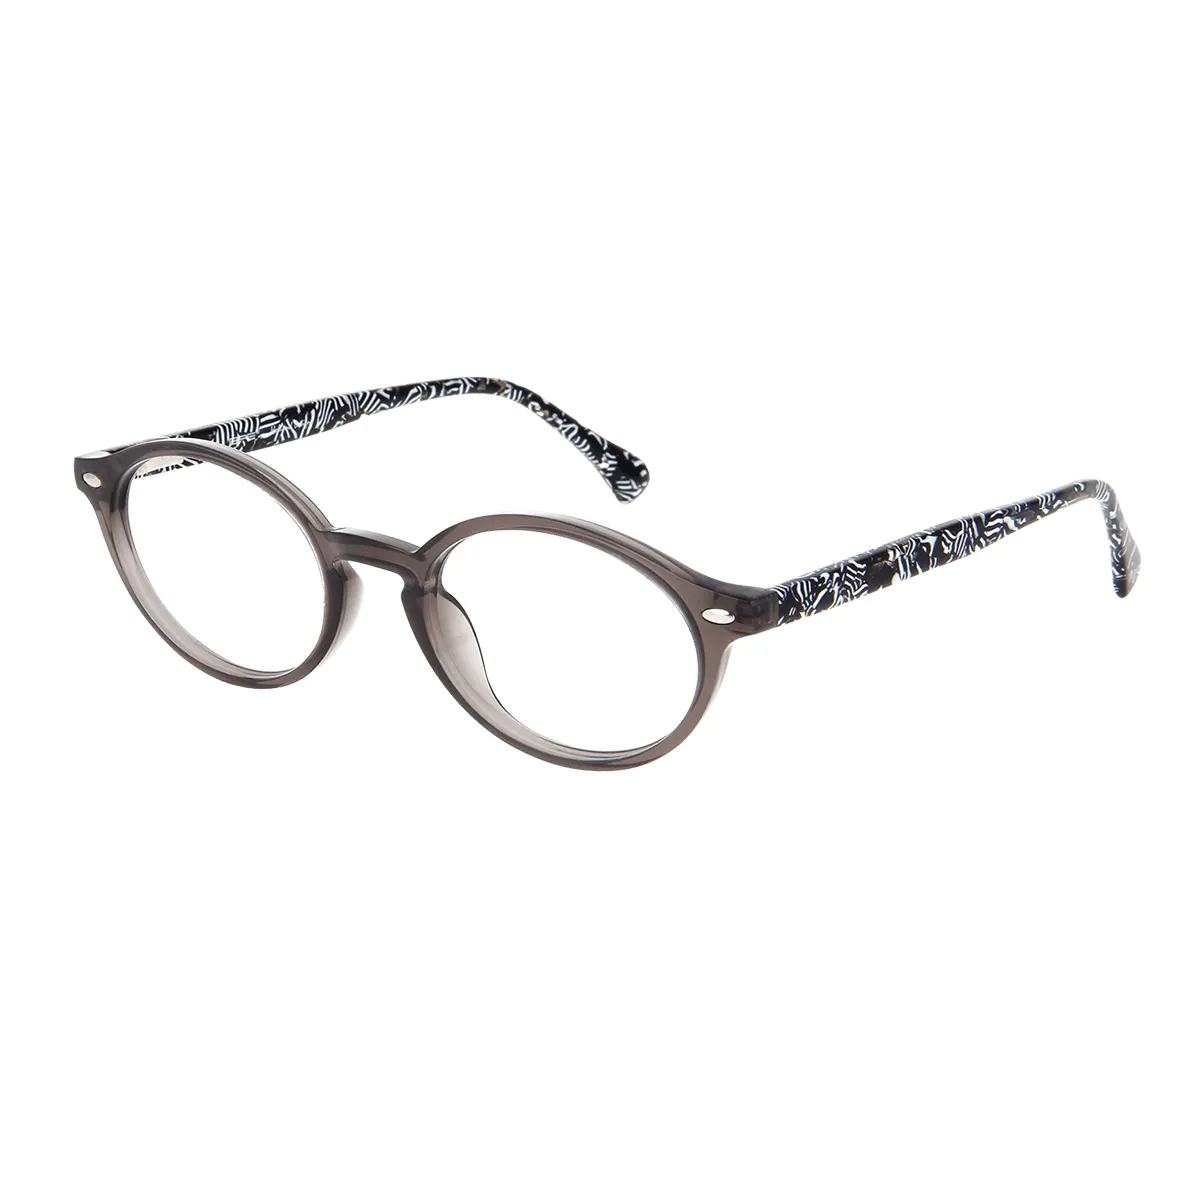 Elijah - Oval Gray Glasses for Women